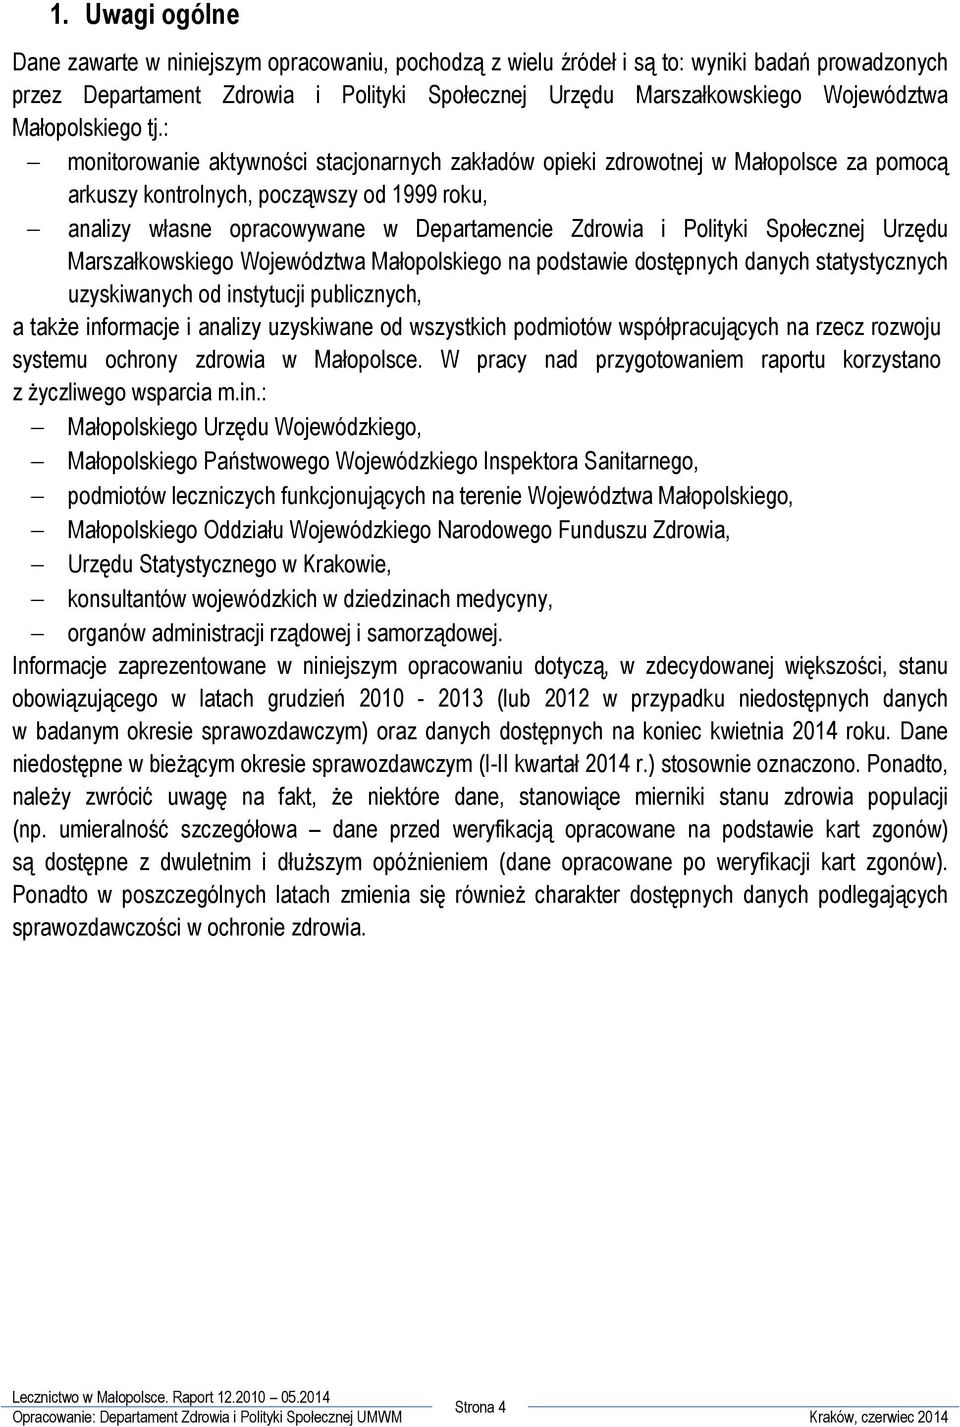 : monitorowanie aktywności stacjonarnych zakładów opieki zdrowotnej w Małopolsce za pomocą arkuszy kontrolnych, począwszy od 1999 roku, analizy własne opracowywane w Departamencie Zdrowia i Polityki